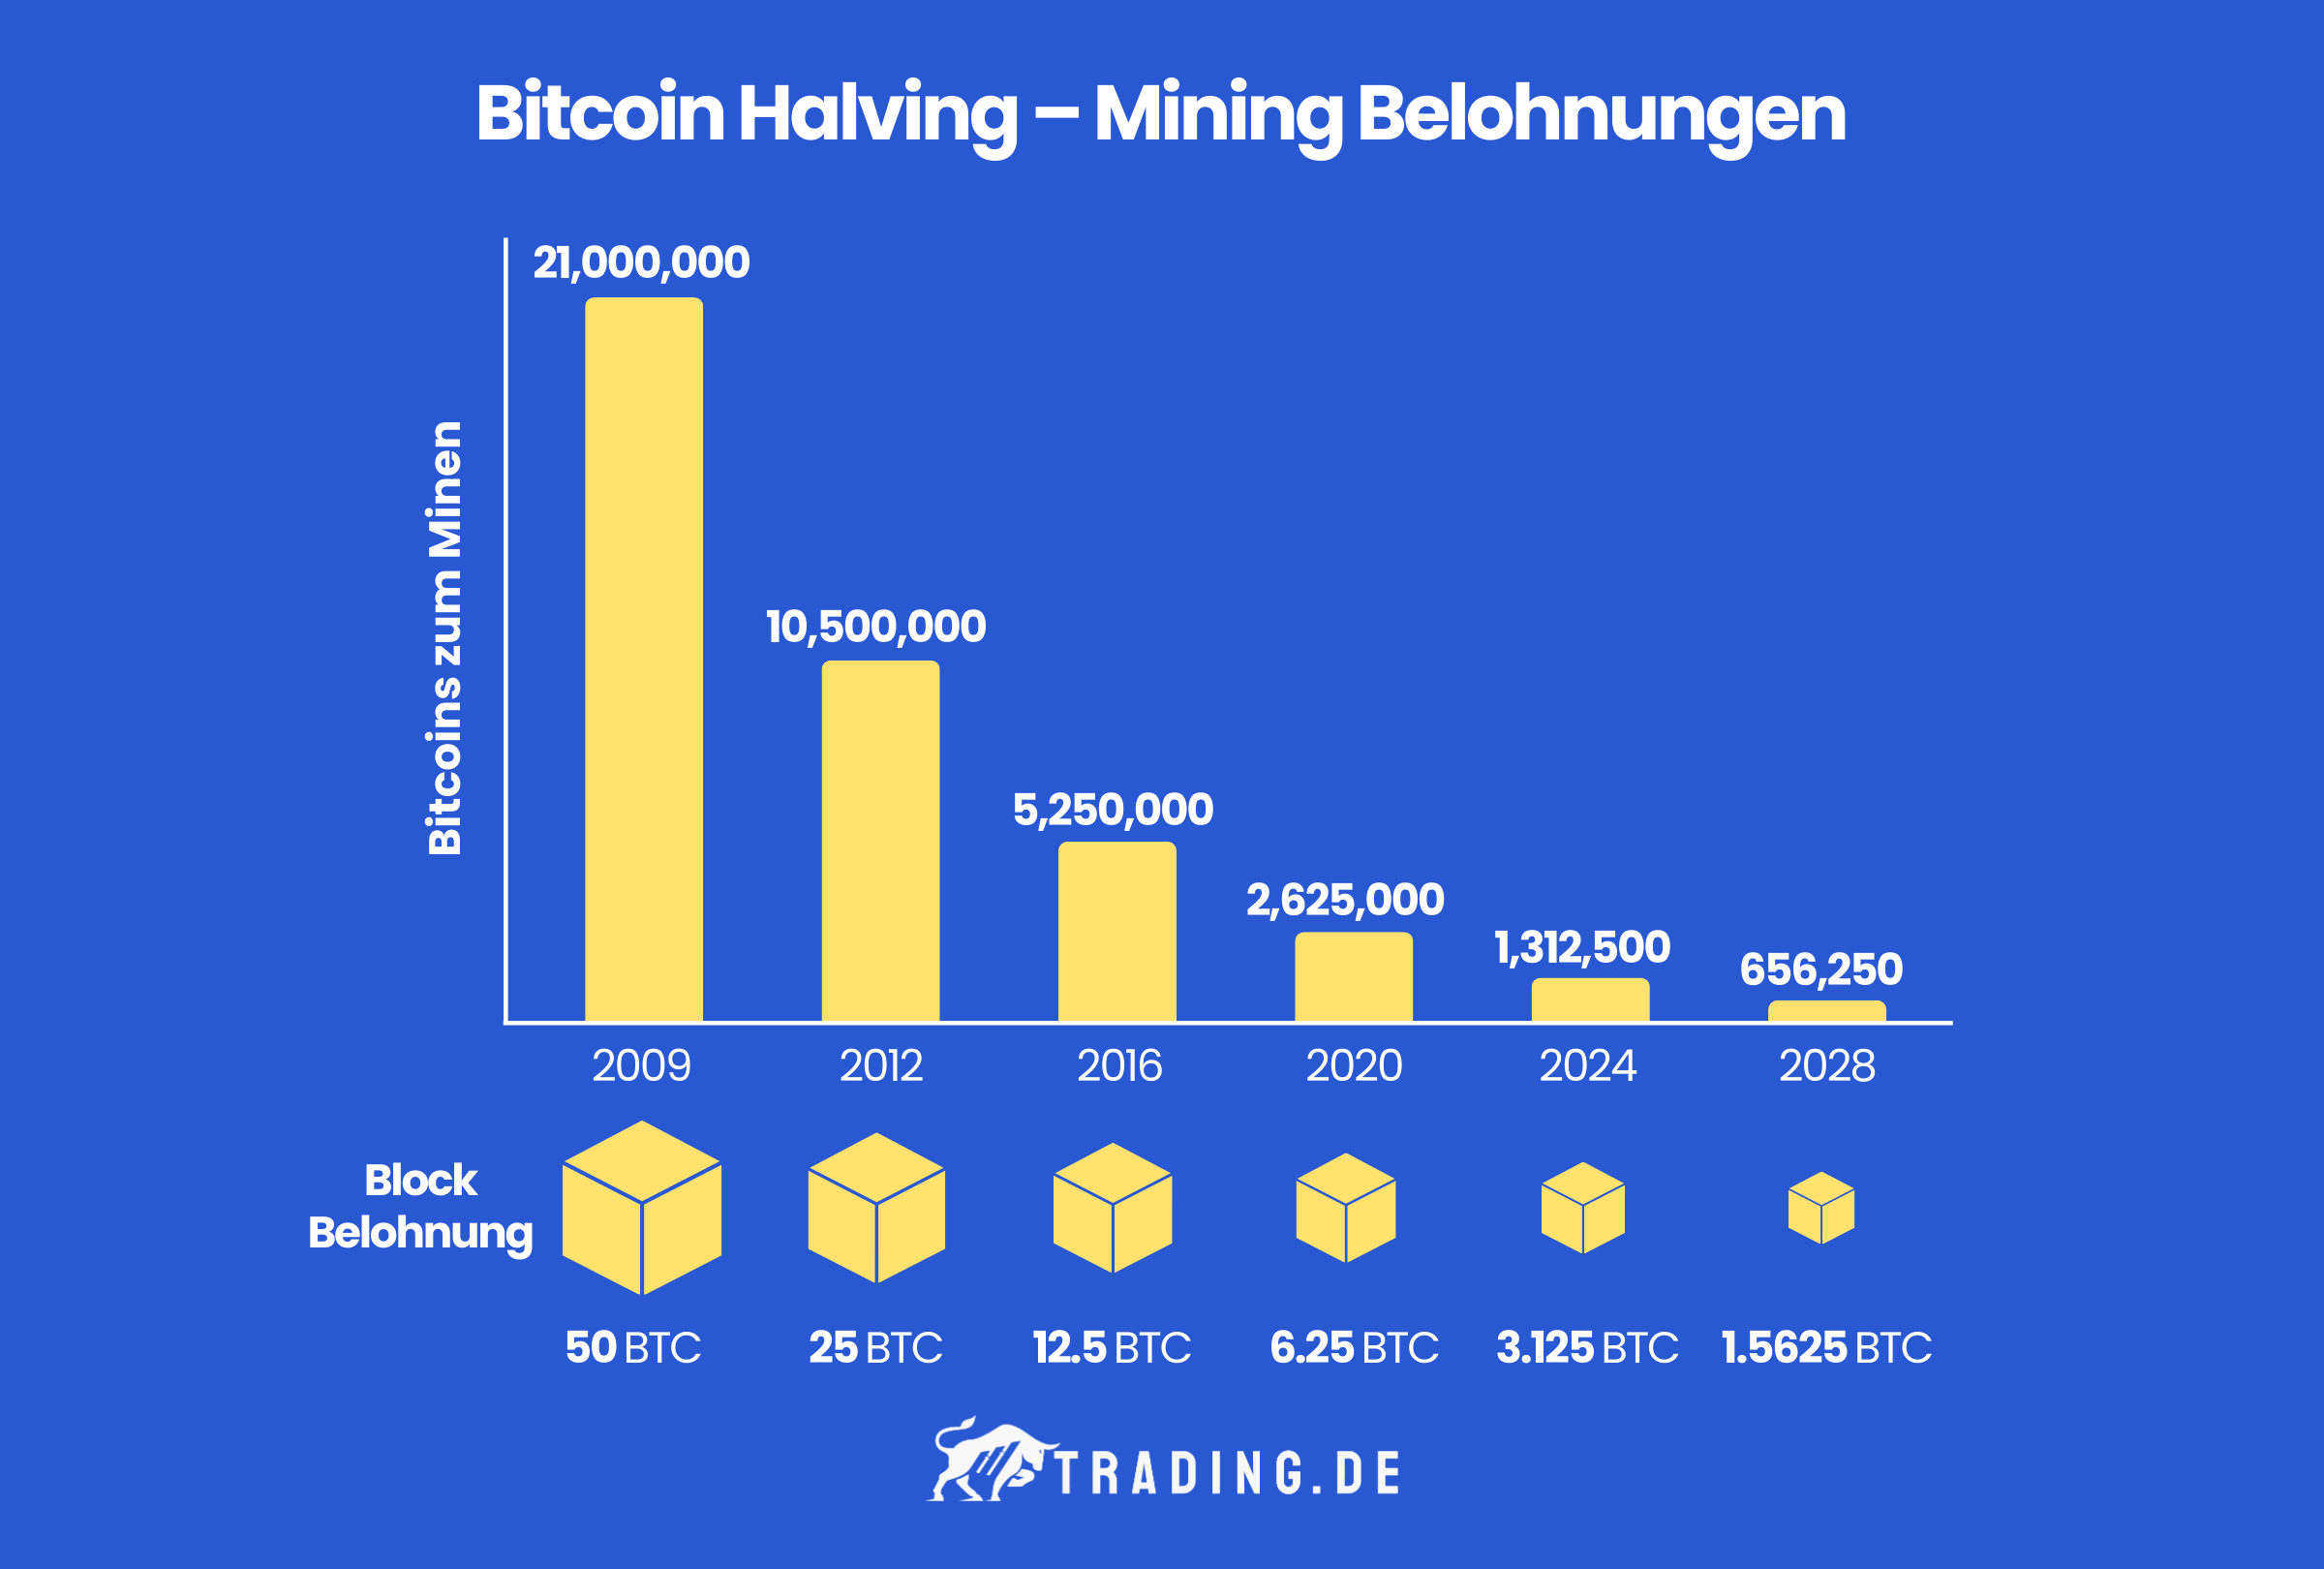 Grafik erklärt Bitcoin Halving und Mining Belohnungen in den Jahren, 2009 (50BTC), 2012 (25BTC), 2016 (12,5BTC), 2020 (6,25 BTC), 2024 (3,125 BTC) und 2028 (1,5625 BTC).